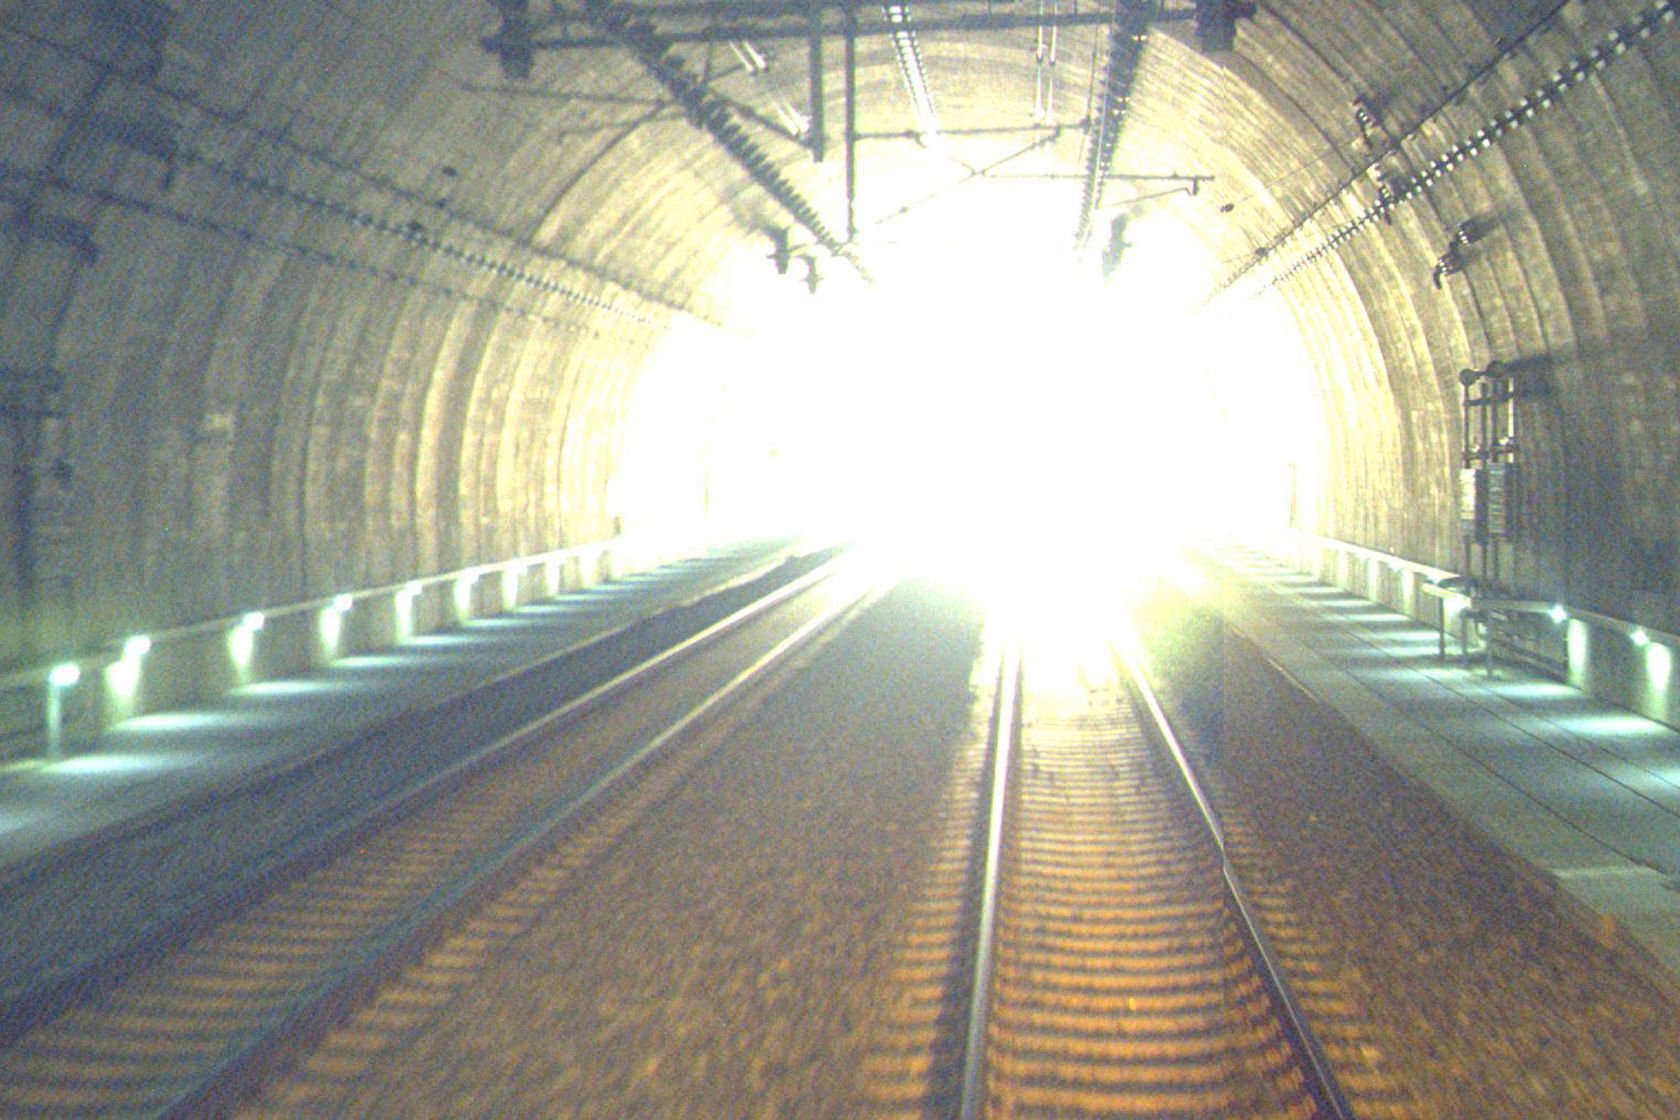 Spor i tunnel på Nykirke stasjon